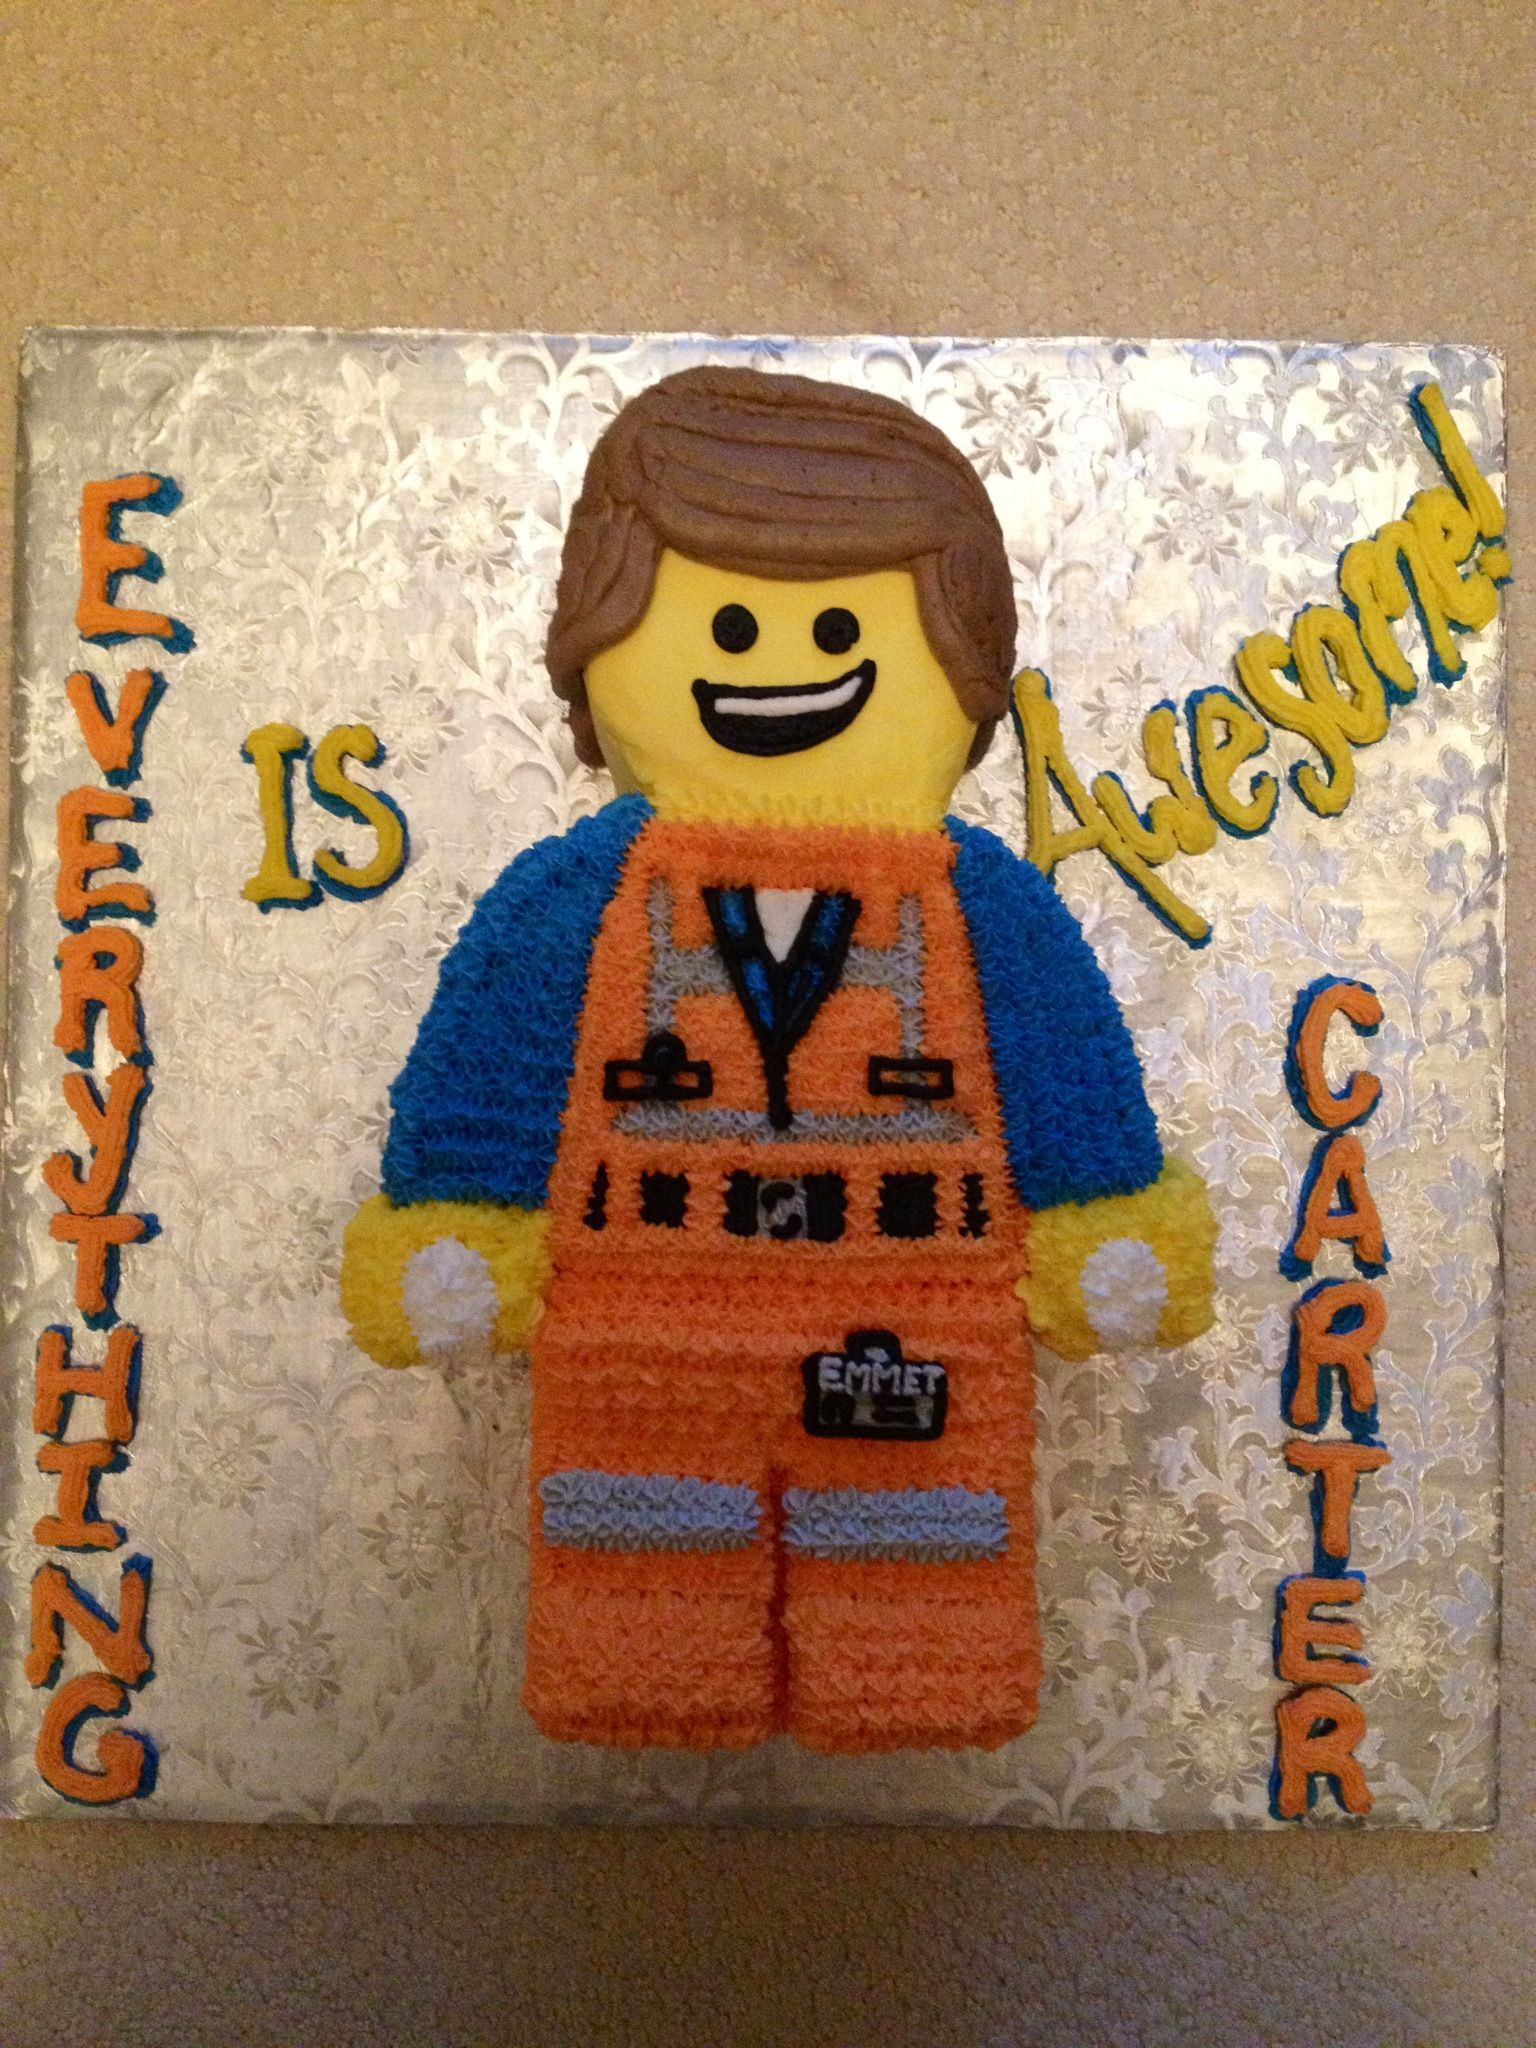 Lego Movie Birthday Cake
 Carter s 7th Birthday Cake Emmit Lego Movie no hat